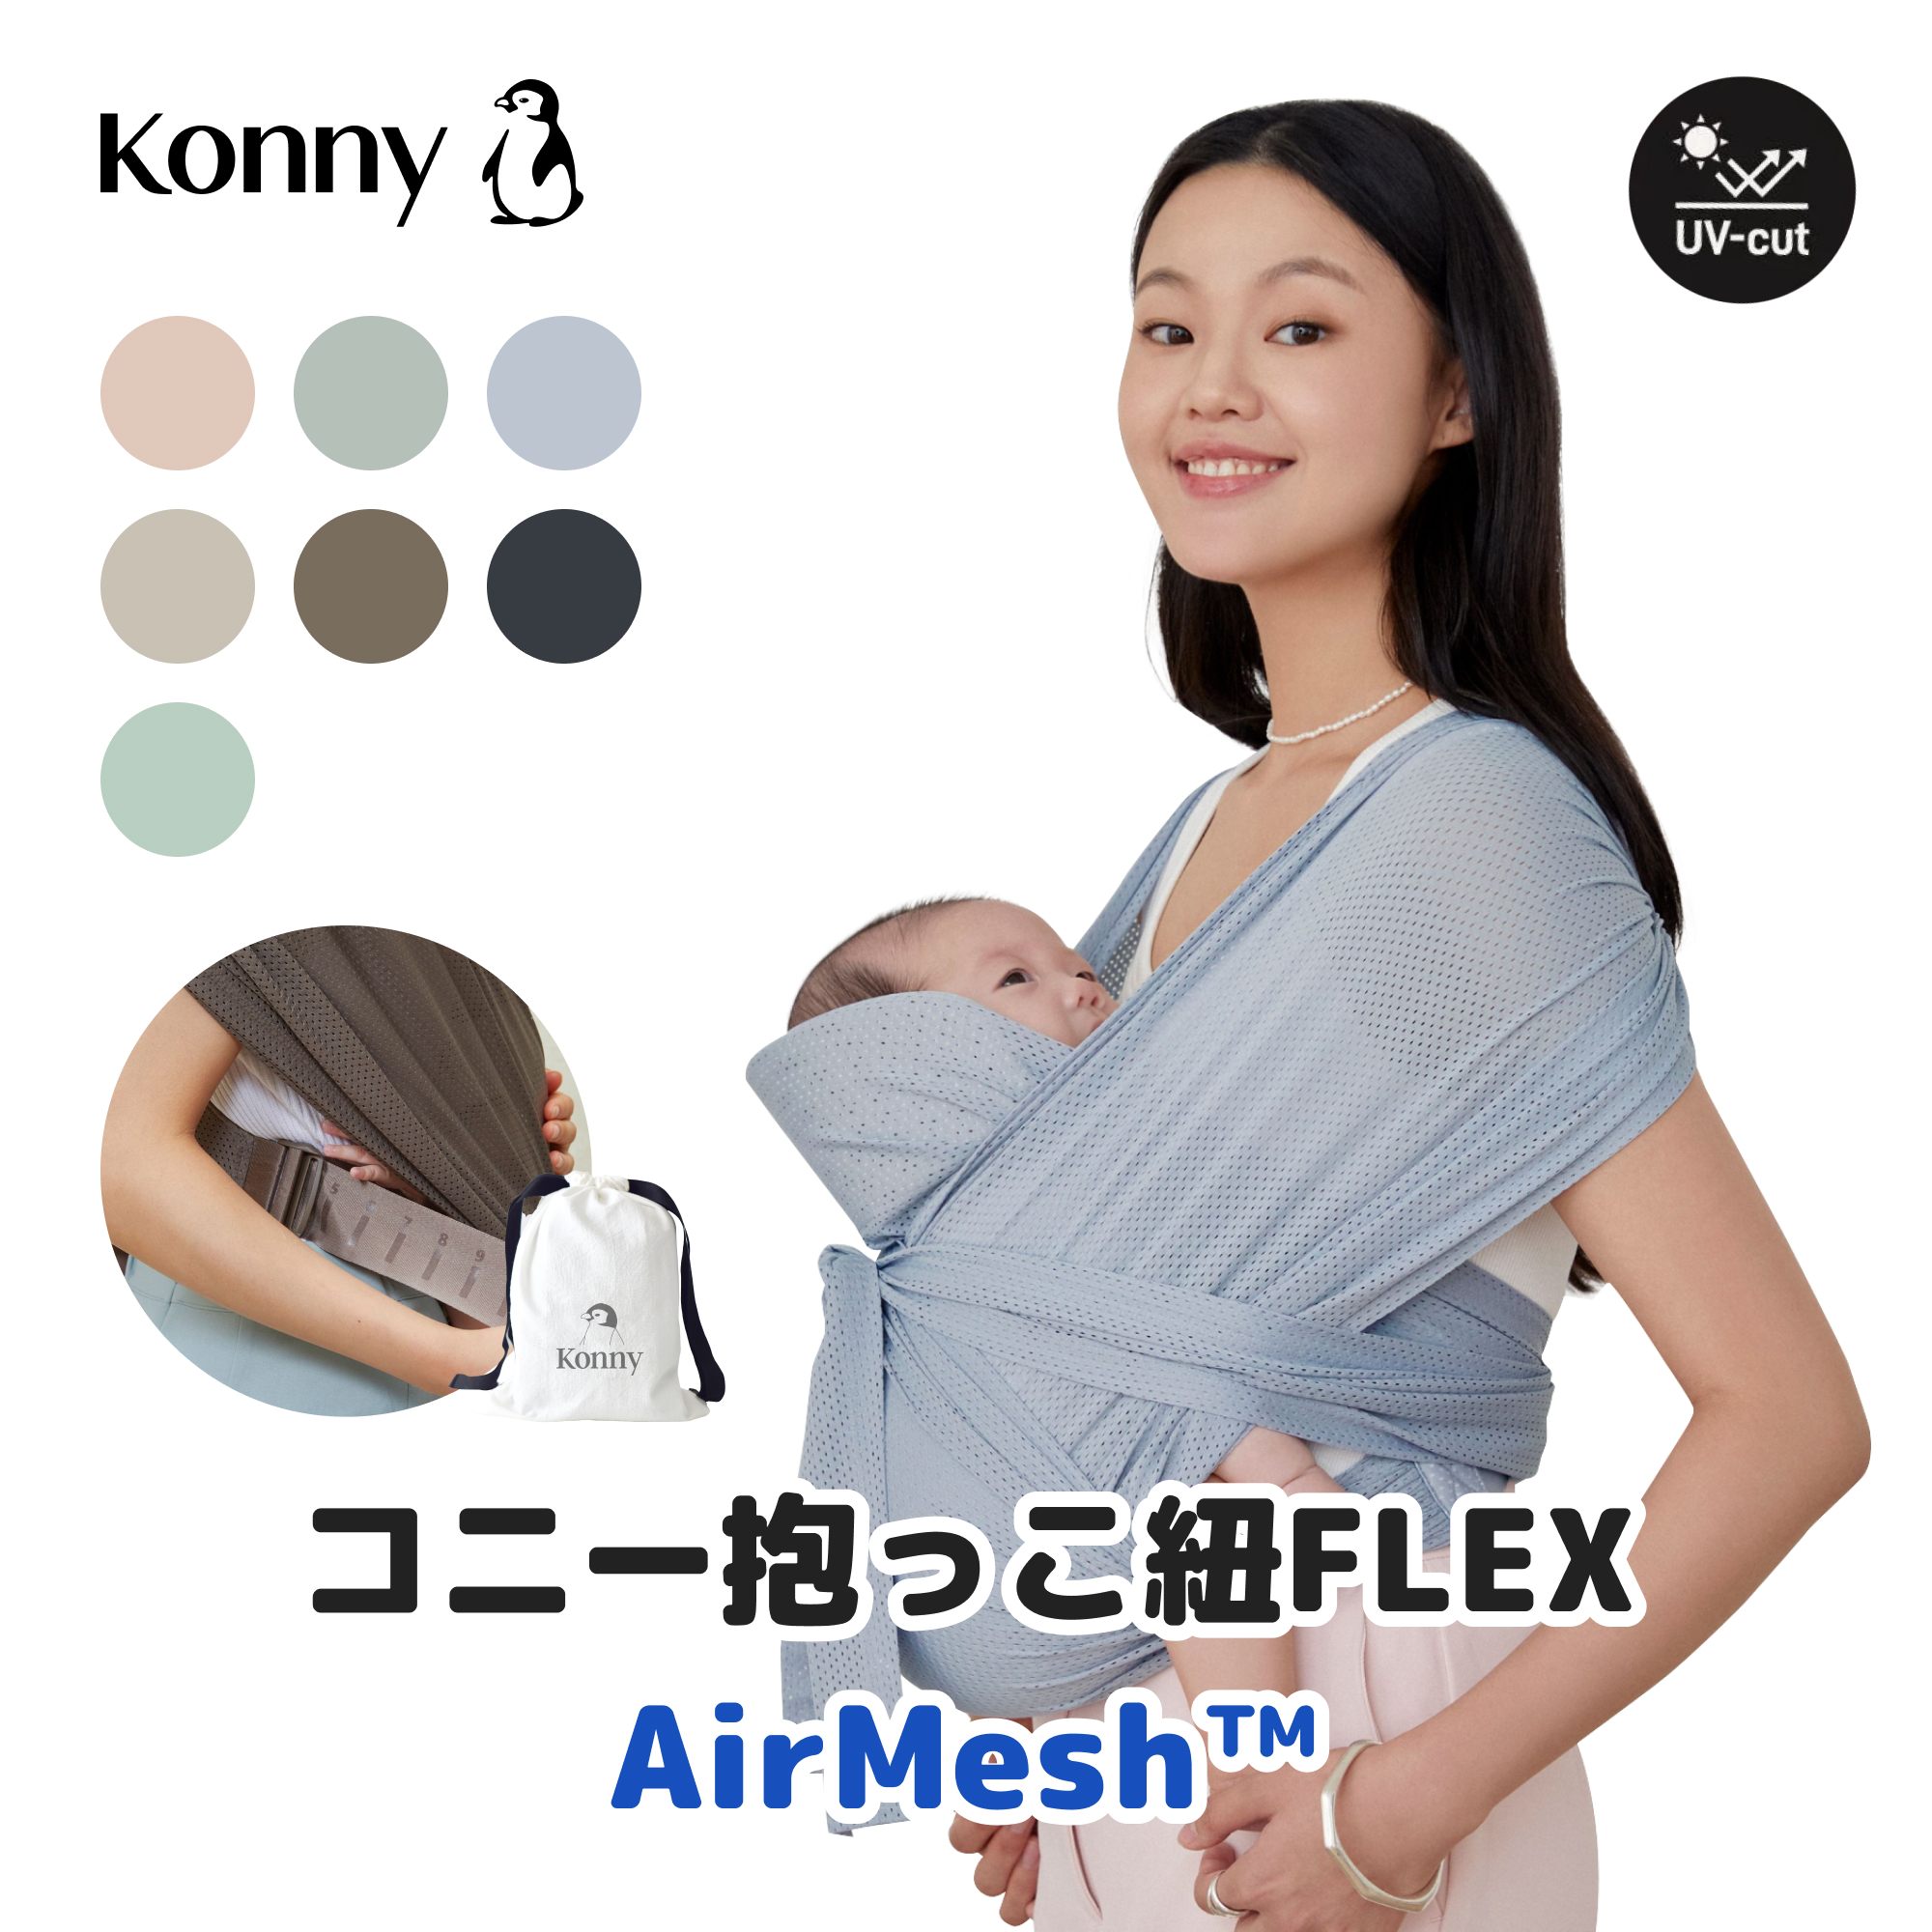 【コニー抱っこ紐FLEX AirMesh™ 】公式 サイズ調節 Konny コニー FLEX ベビー スリング 家族兼用 赤ちゃん  出産祝い ギフト 抱っこひも 抱っこ紐 出産準備 夏用抱っこ紐 メッシュ ヘッドサポート付き コニー抱っこ紐